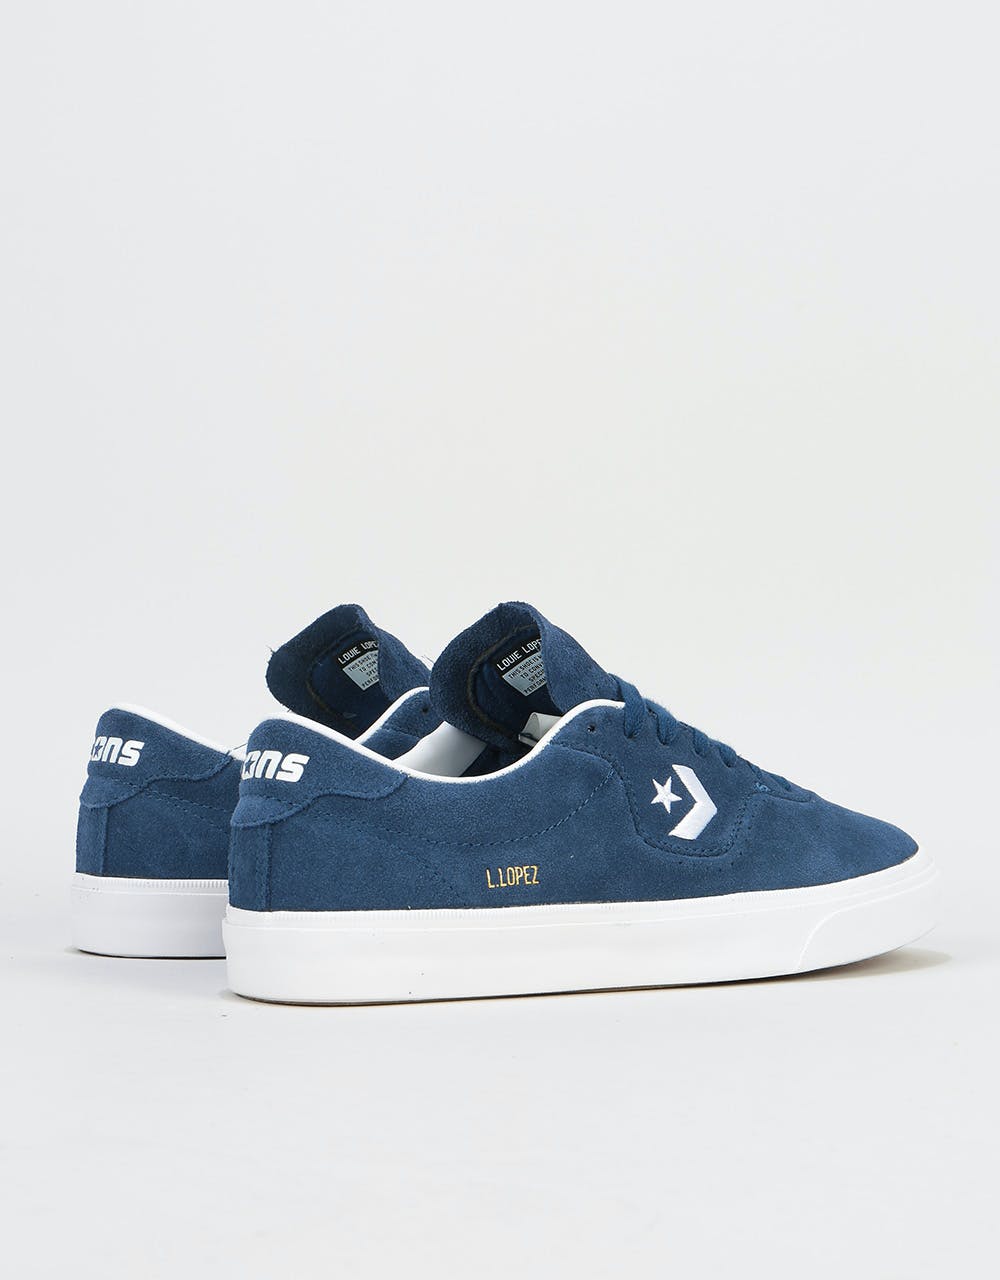 Converse Lopez Pro Skate Shoes - Navy/White/Gum